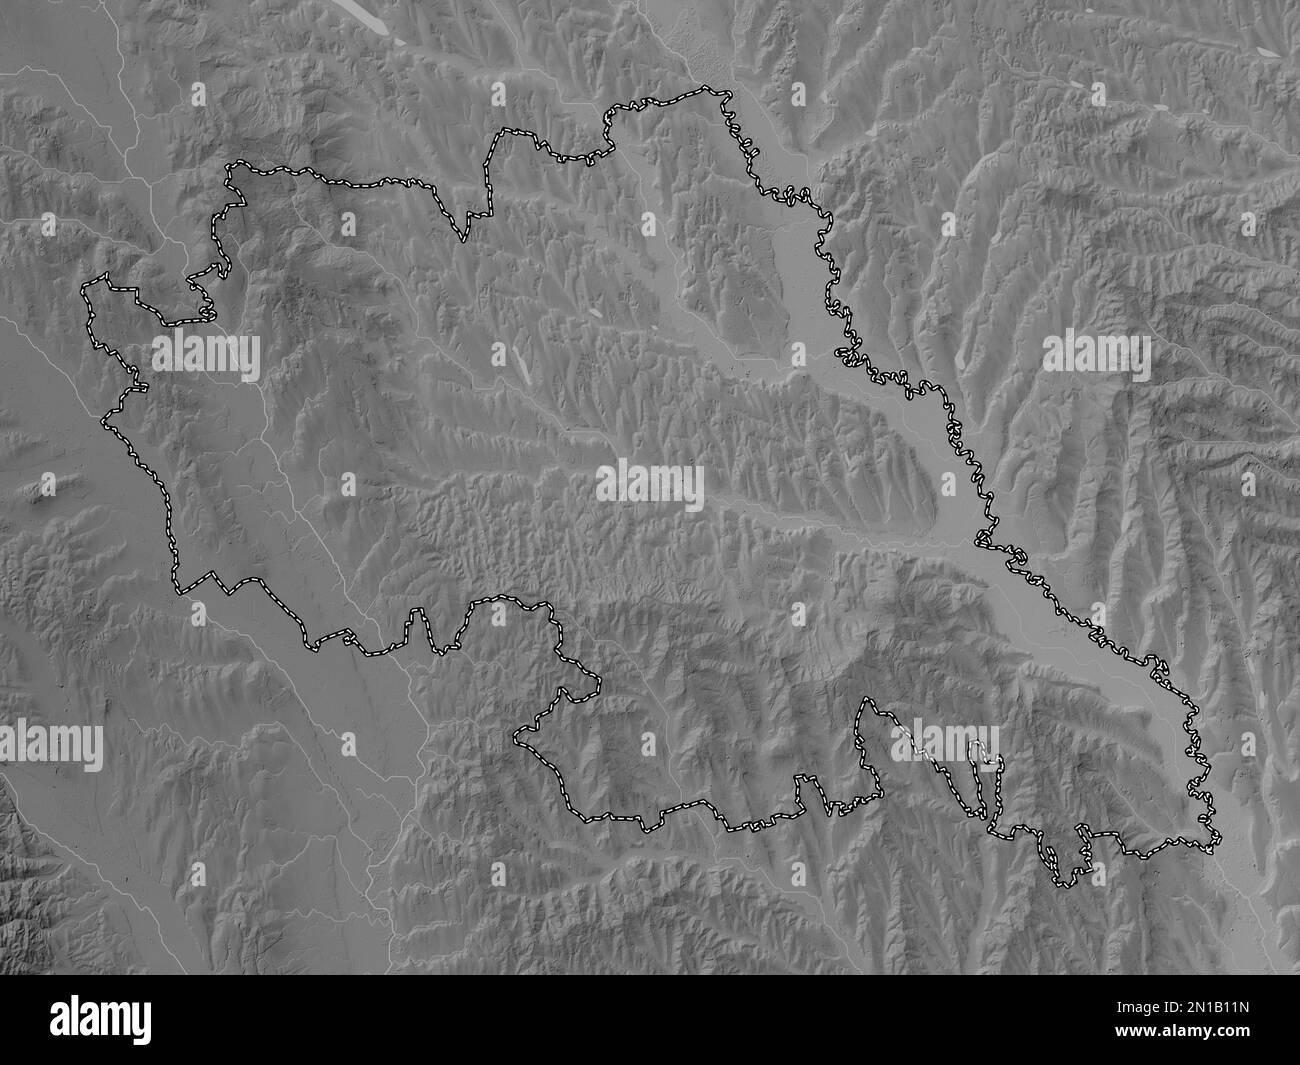 Iasi, comté de Roumanie. Carte d'altitude en niveaux de gris avec lacs et rivières Banque D'Images